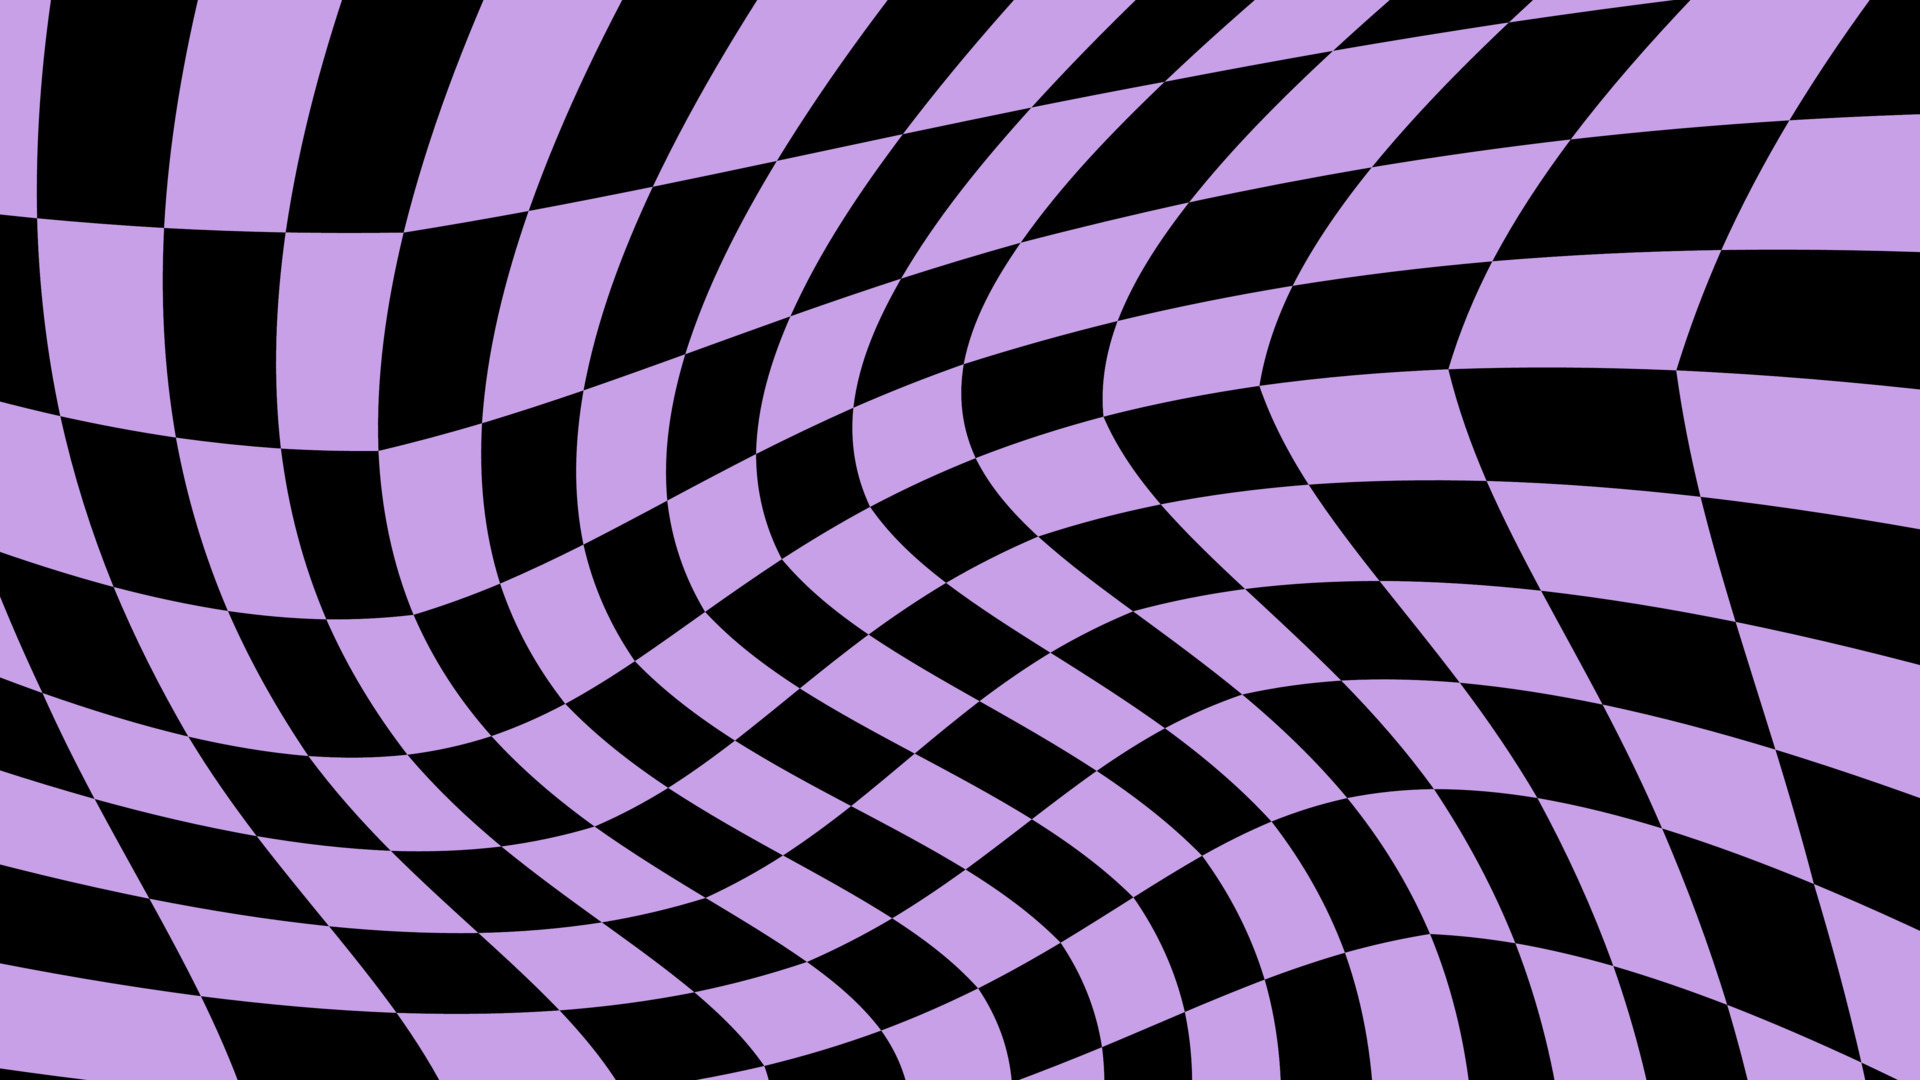 73+] Purple And Black Wallpaper - WallpaperSafari